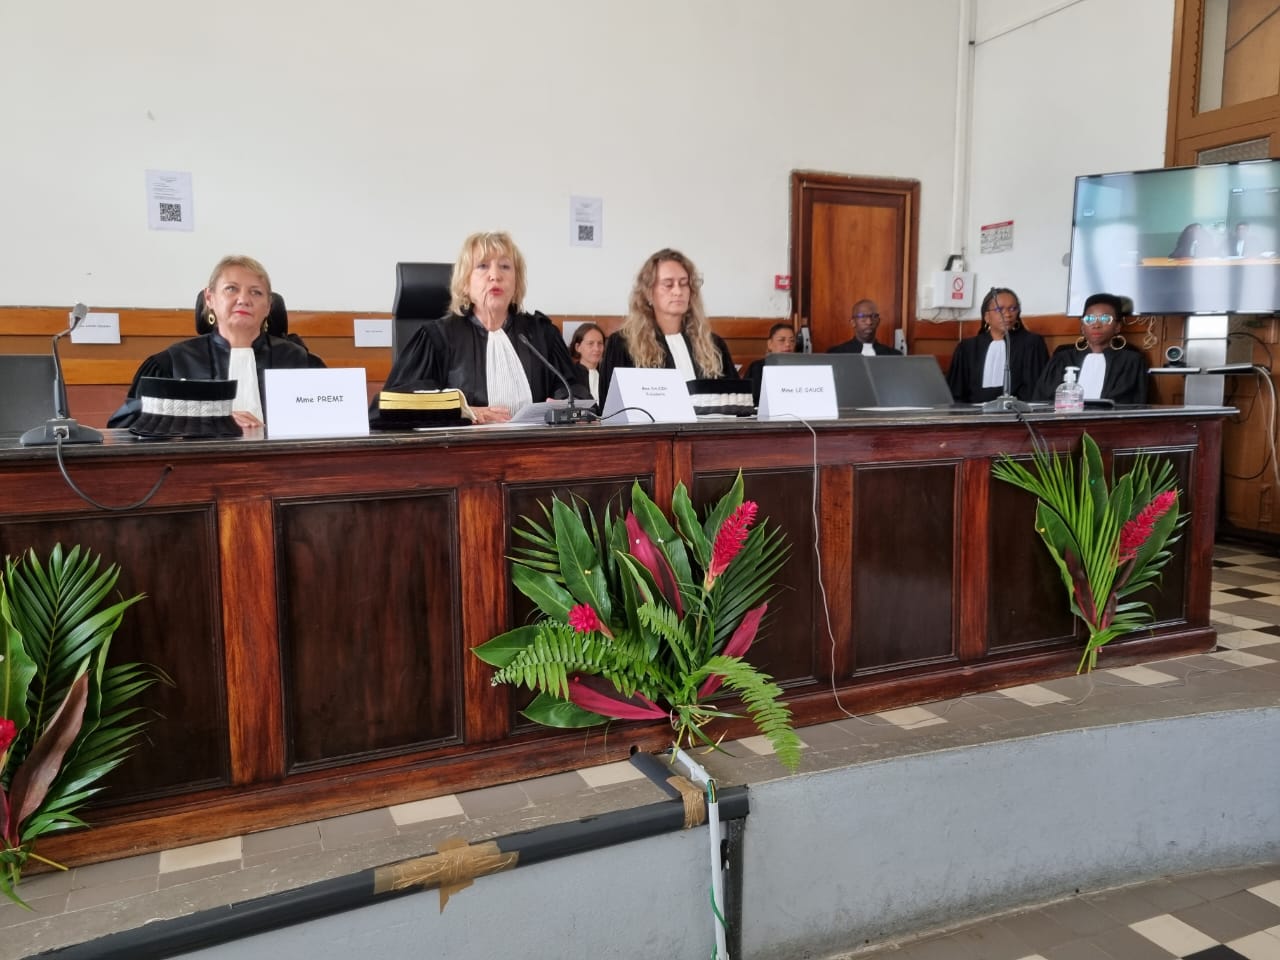     Le tribunal judiciaire de Basse-Terre a fait sa rentrée solennelle

